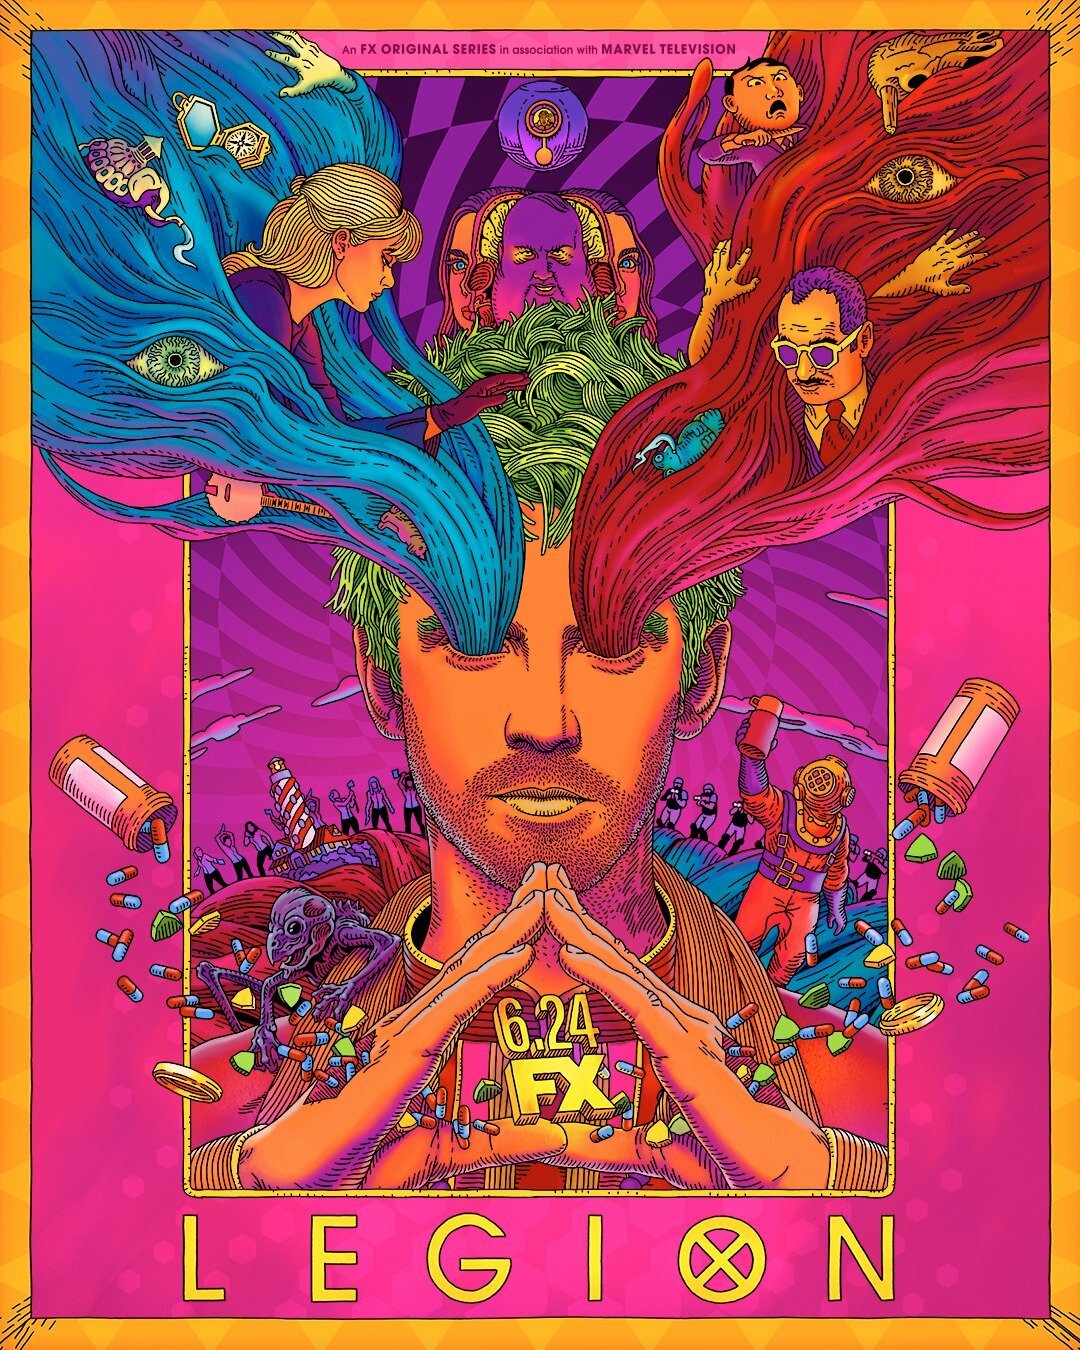 Il poster psichedelico di Legion con i protagonisti della serie